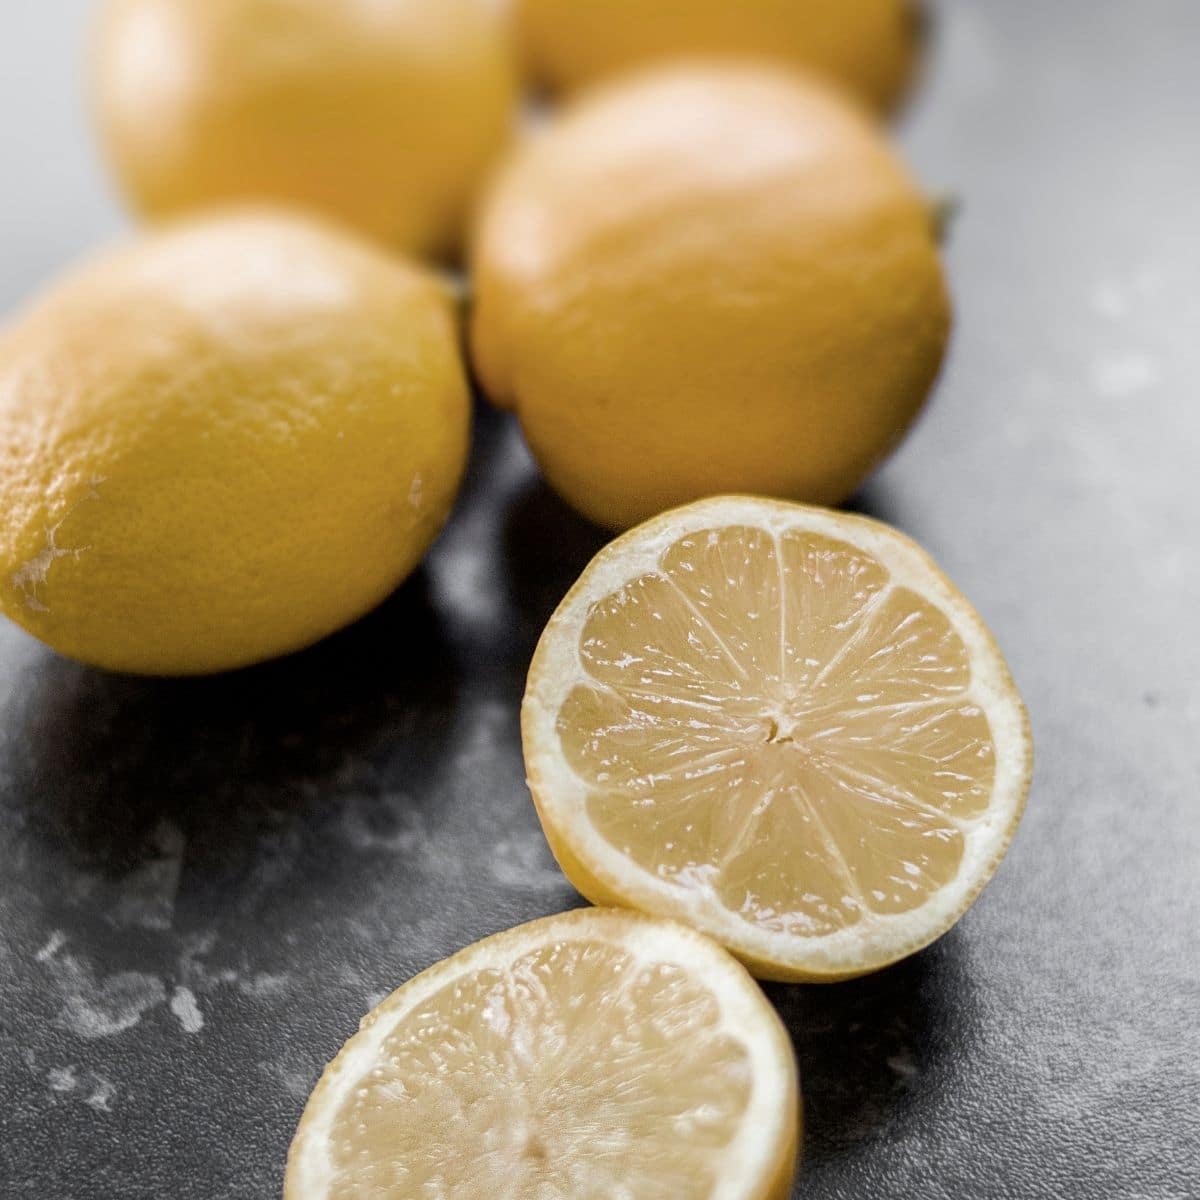 Колко сок има в едно лимоново изображение на пресни лимони.